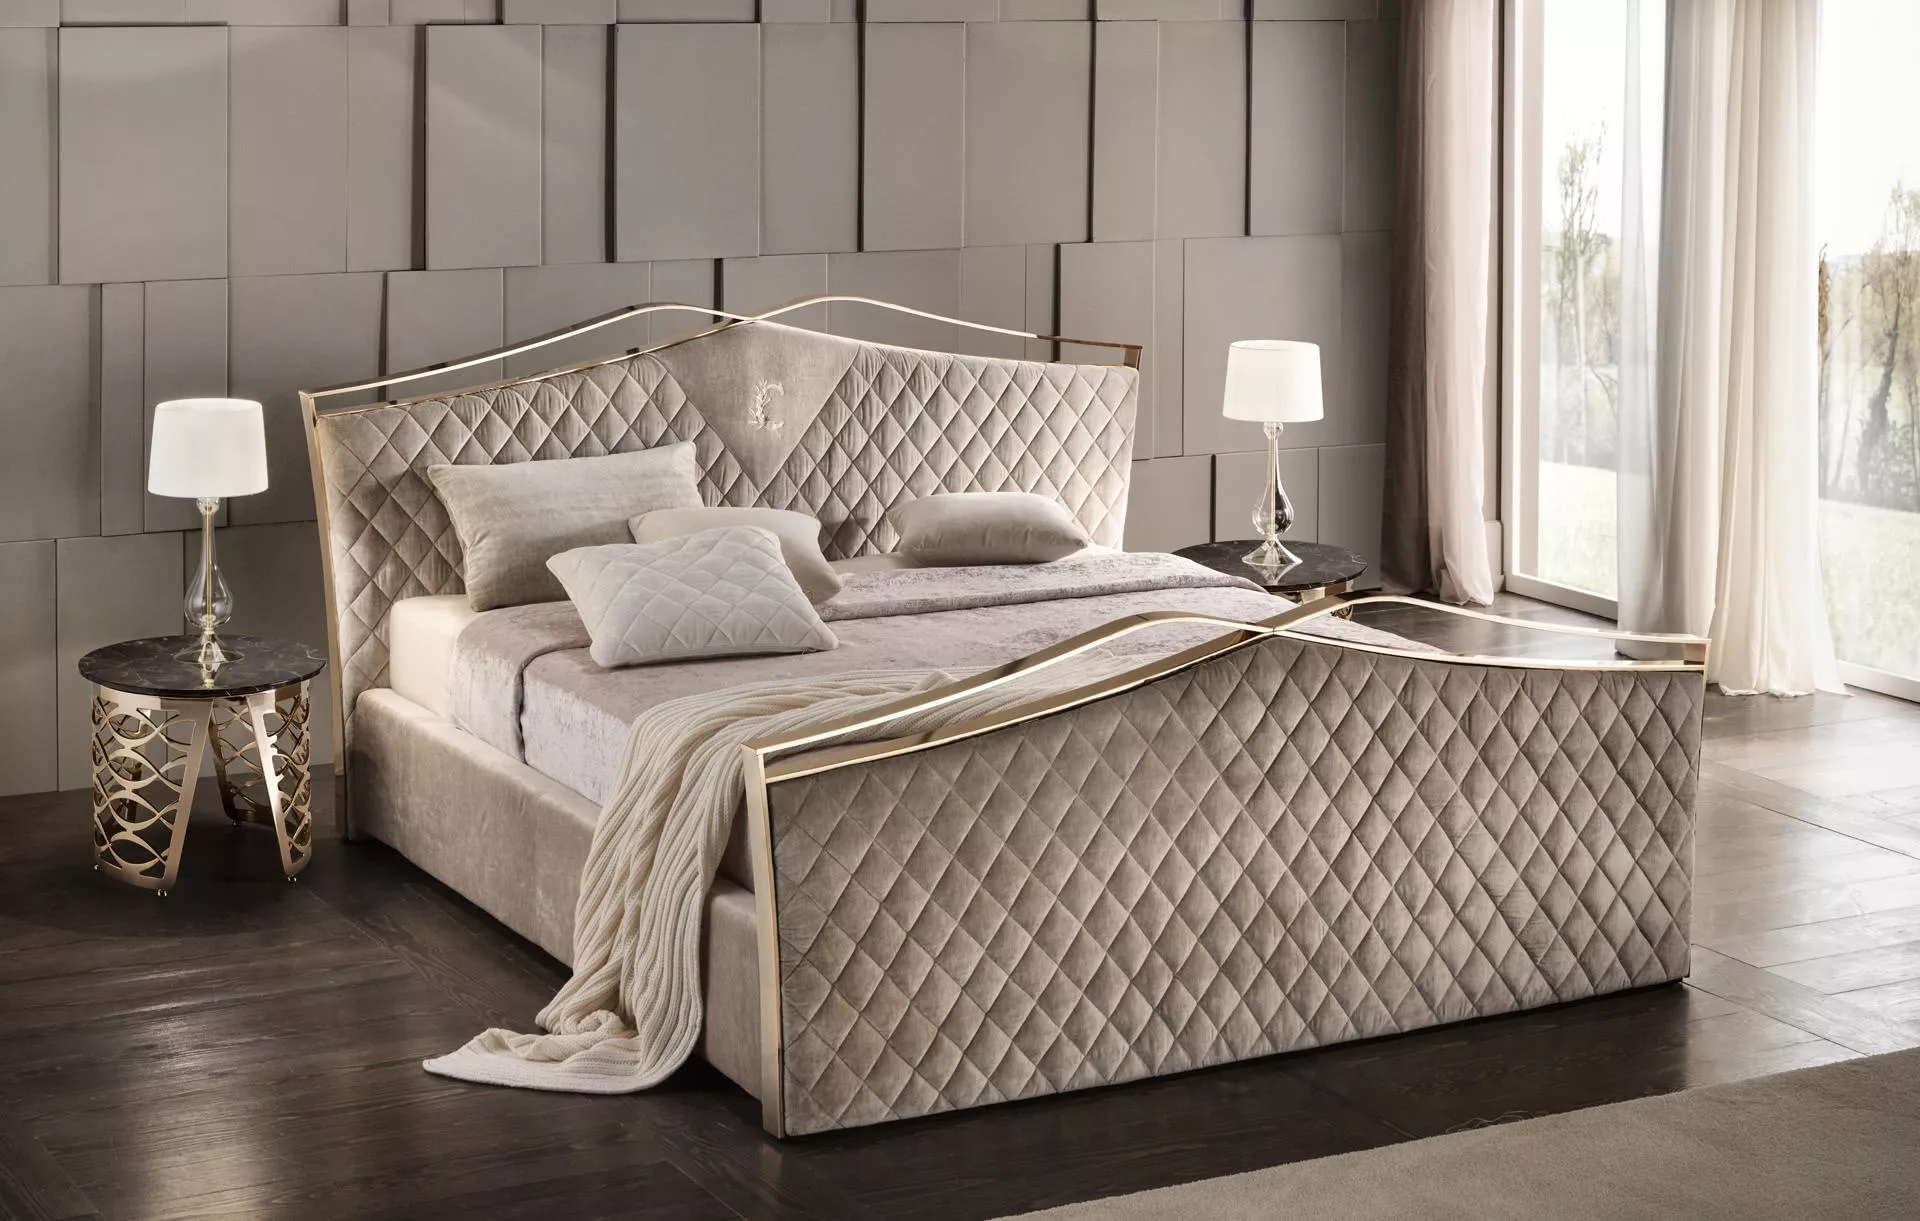 Кровать Valentino  Cantori  — купить по цене фабрики